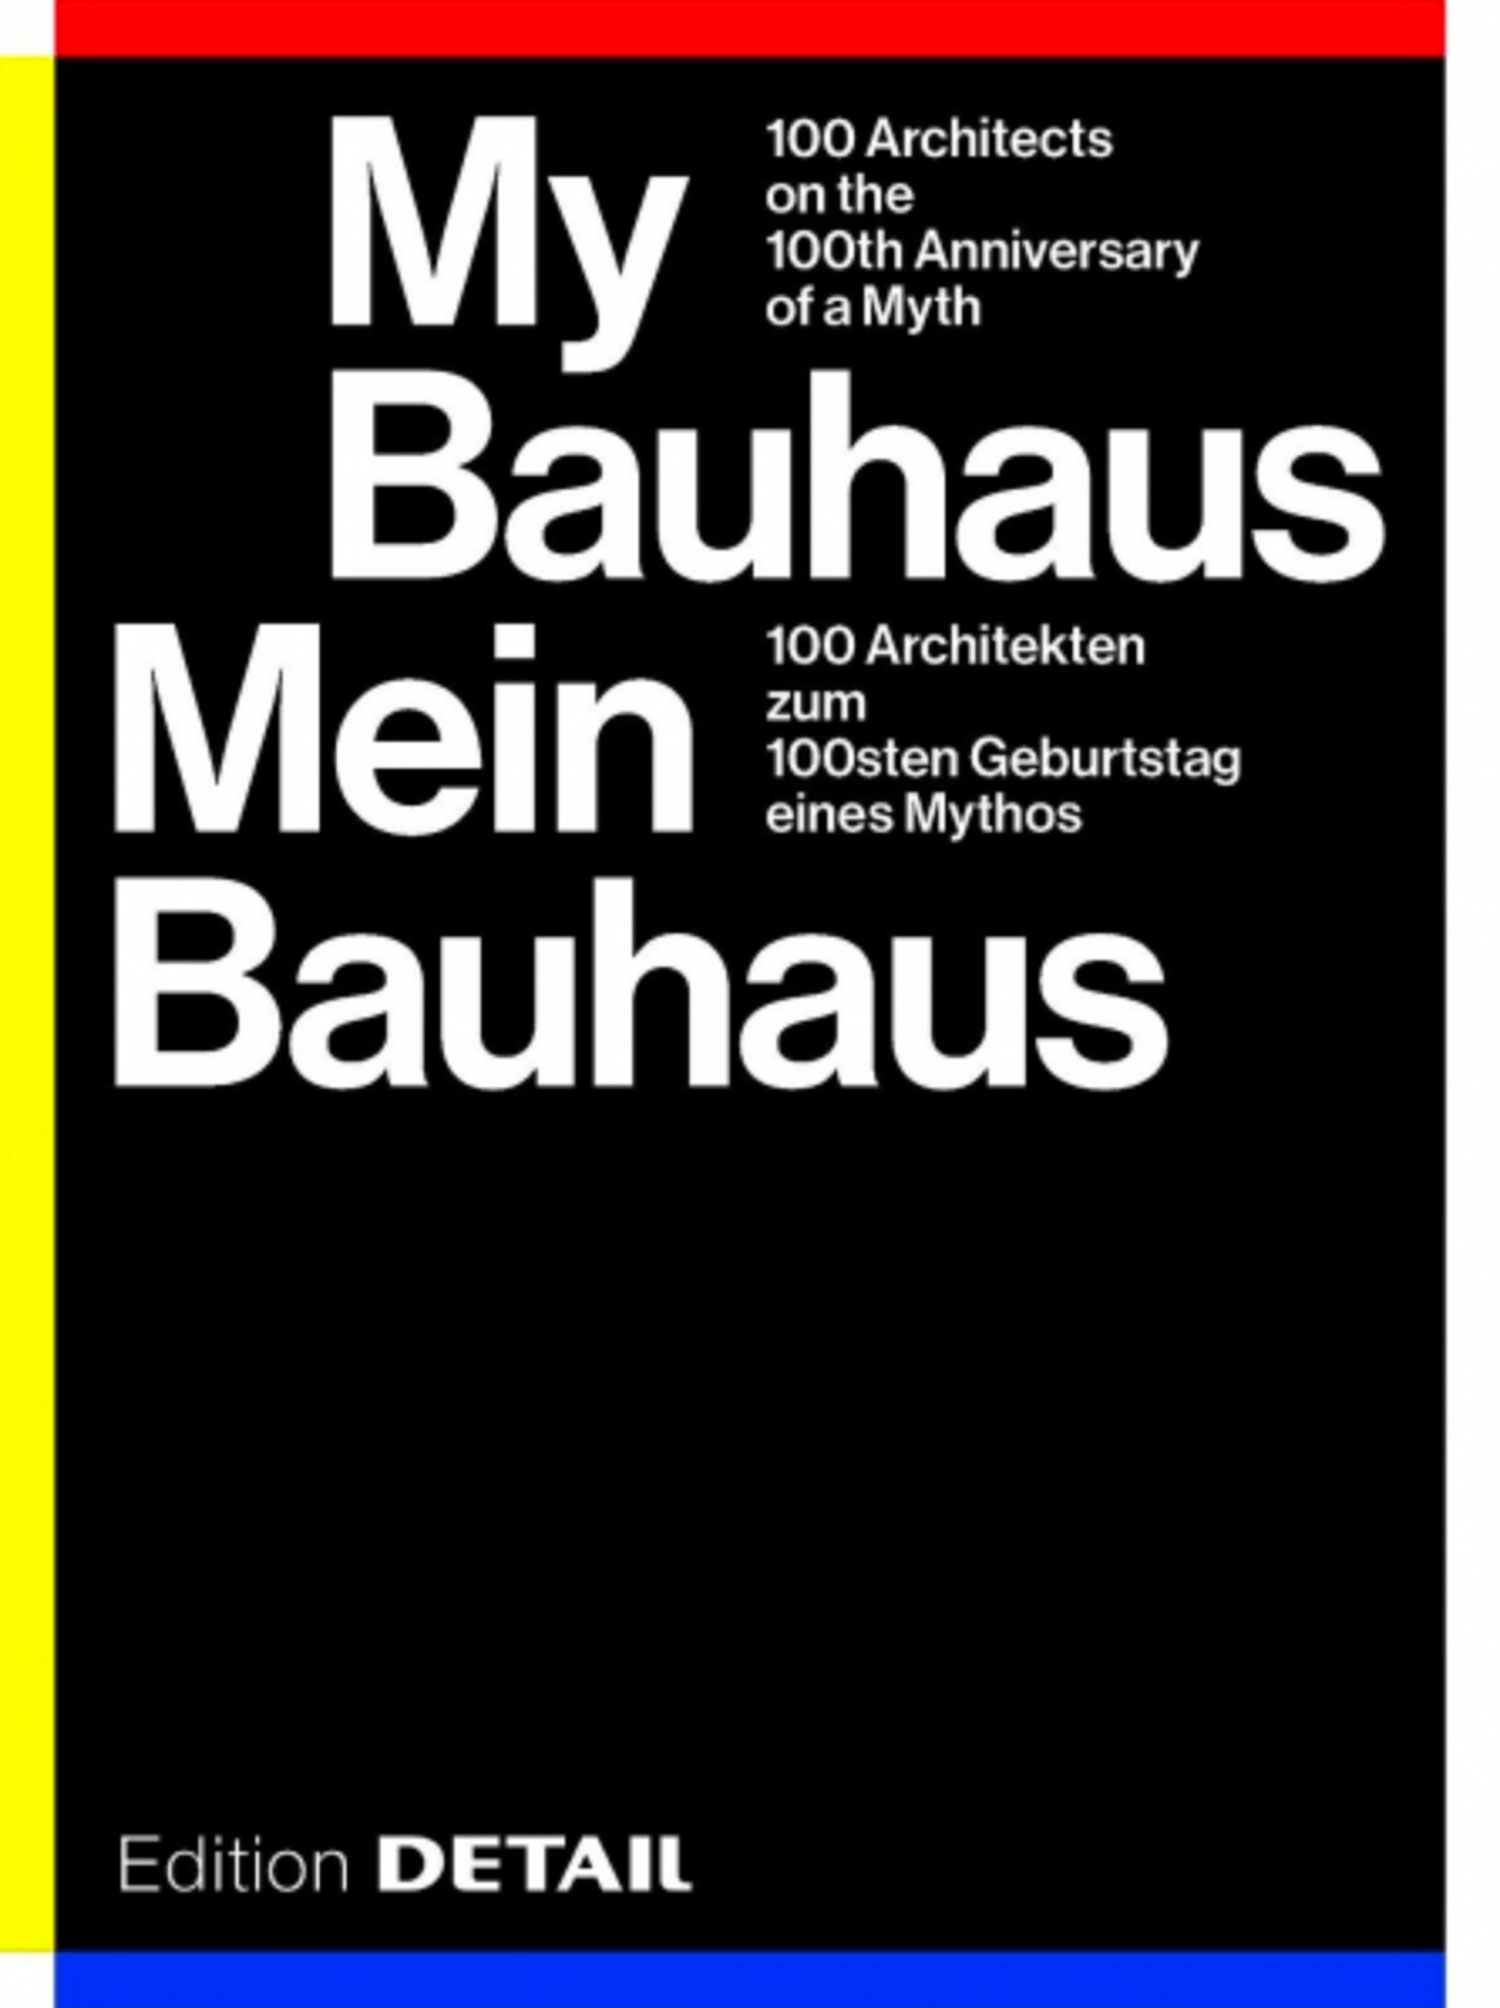 My Bauhaus- Mein Bauhaus